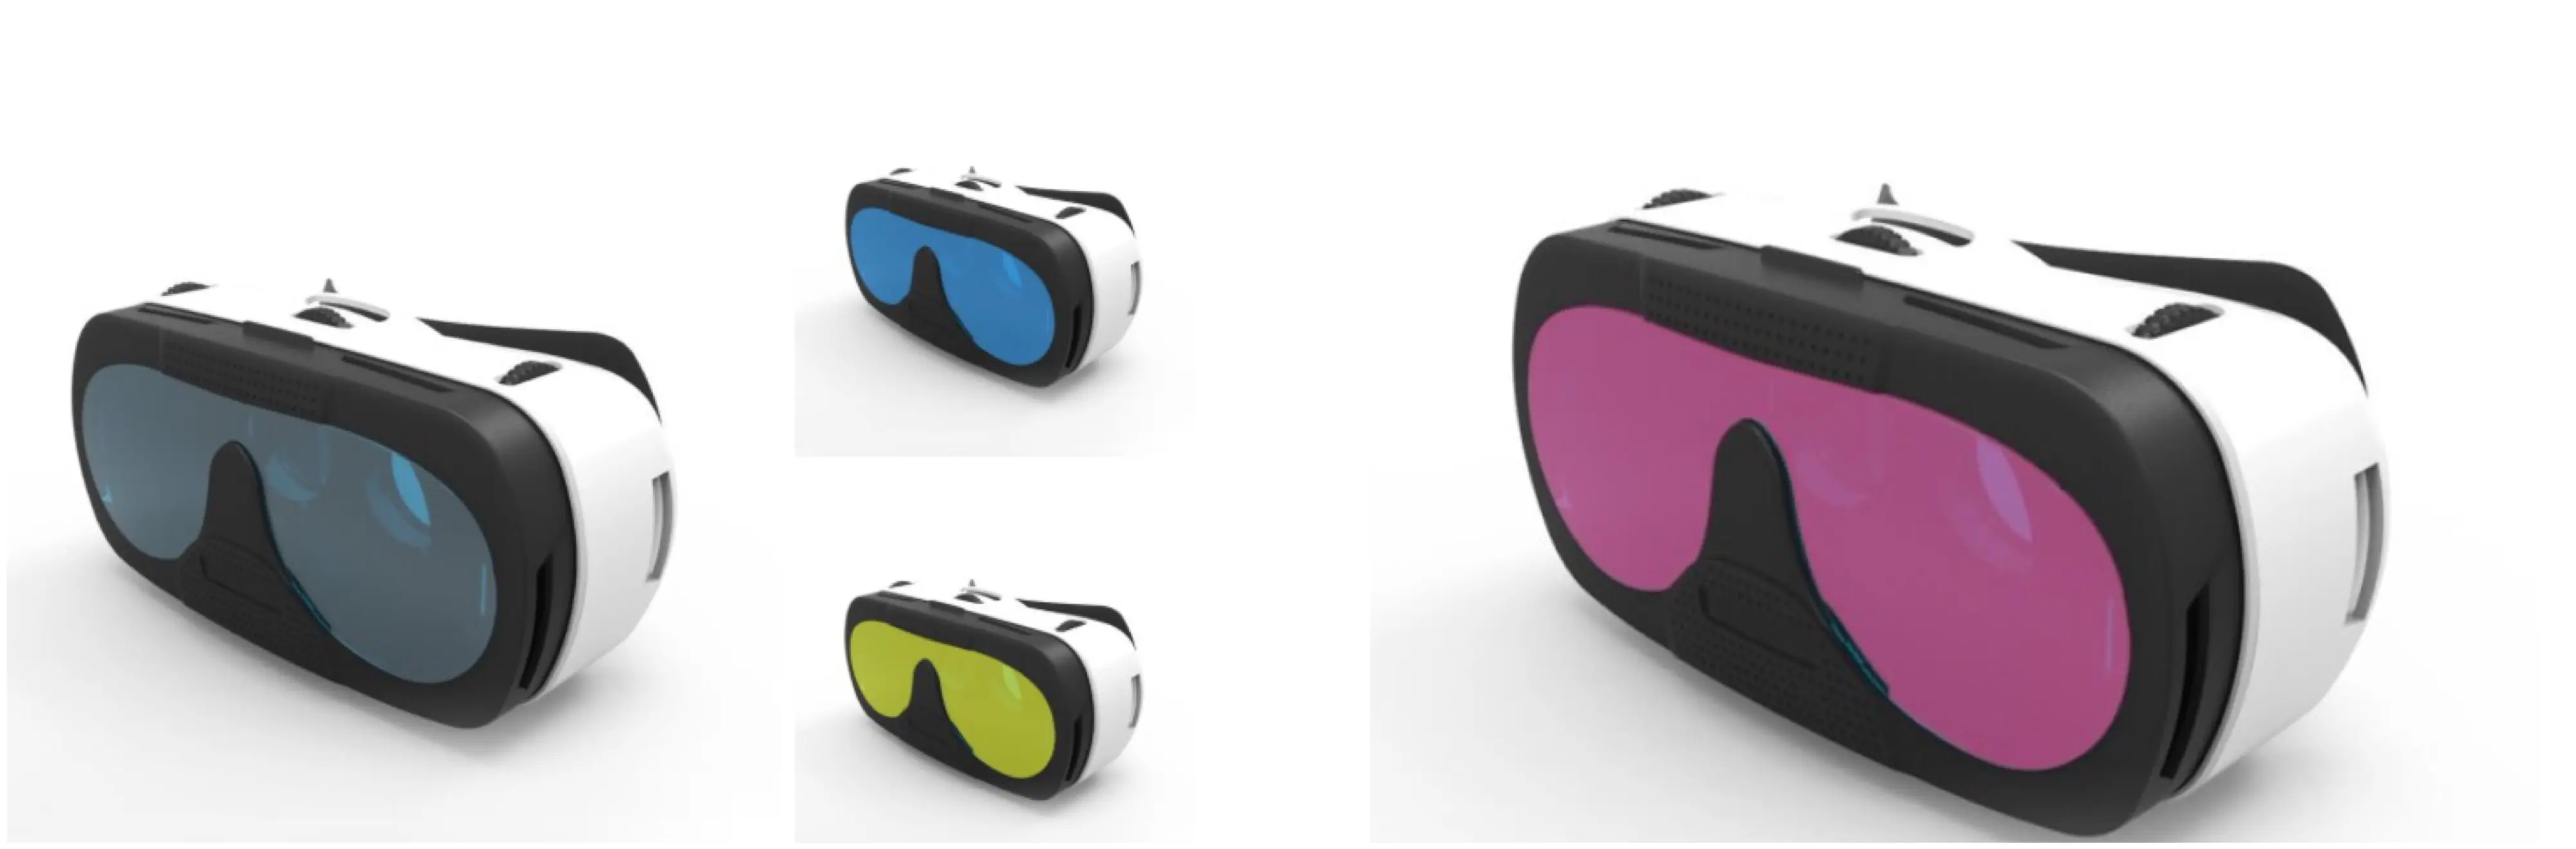 Aiwear podría perfilar de color sus gafas VR